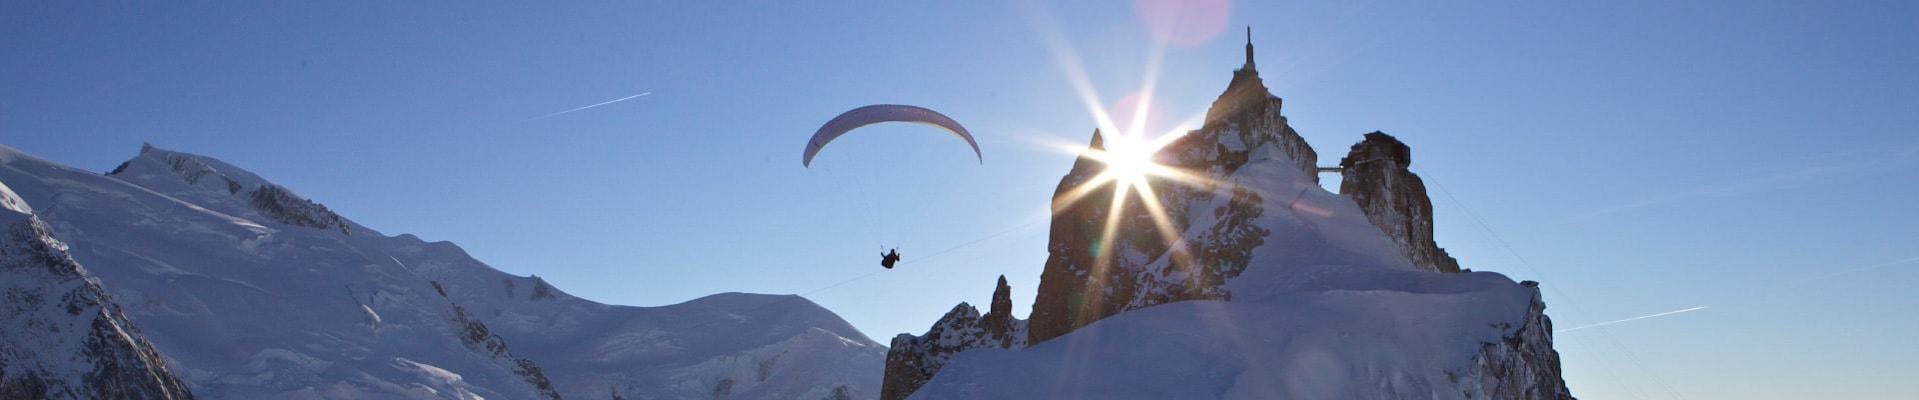 Un pilote de parapente de Kailash Parapente effectue un Vol Parapente Biplace depuis l'Aiguille du midi sur fond de montagne.